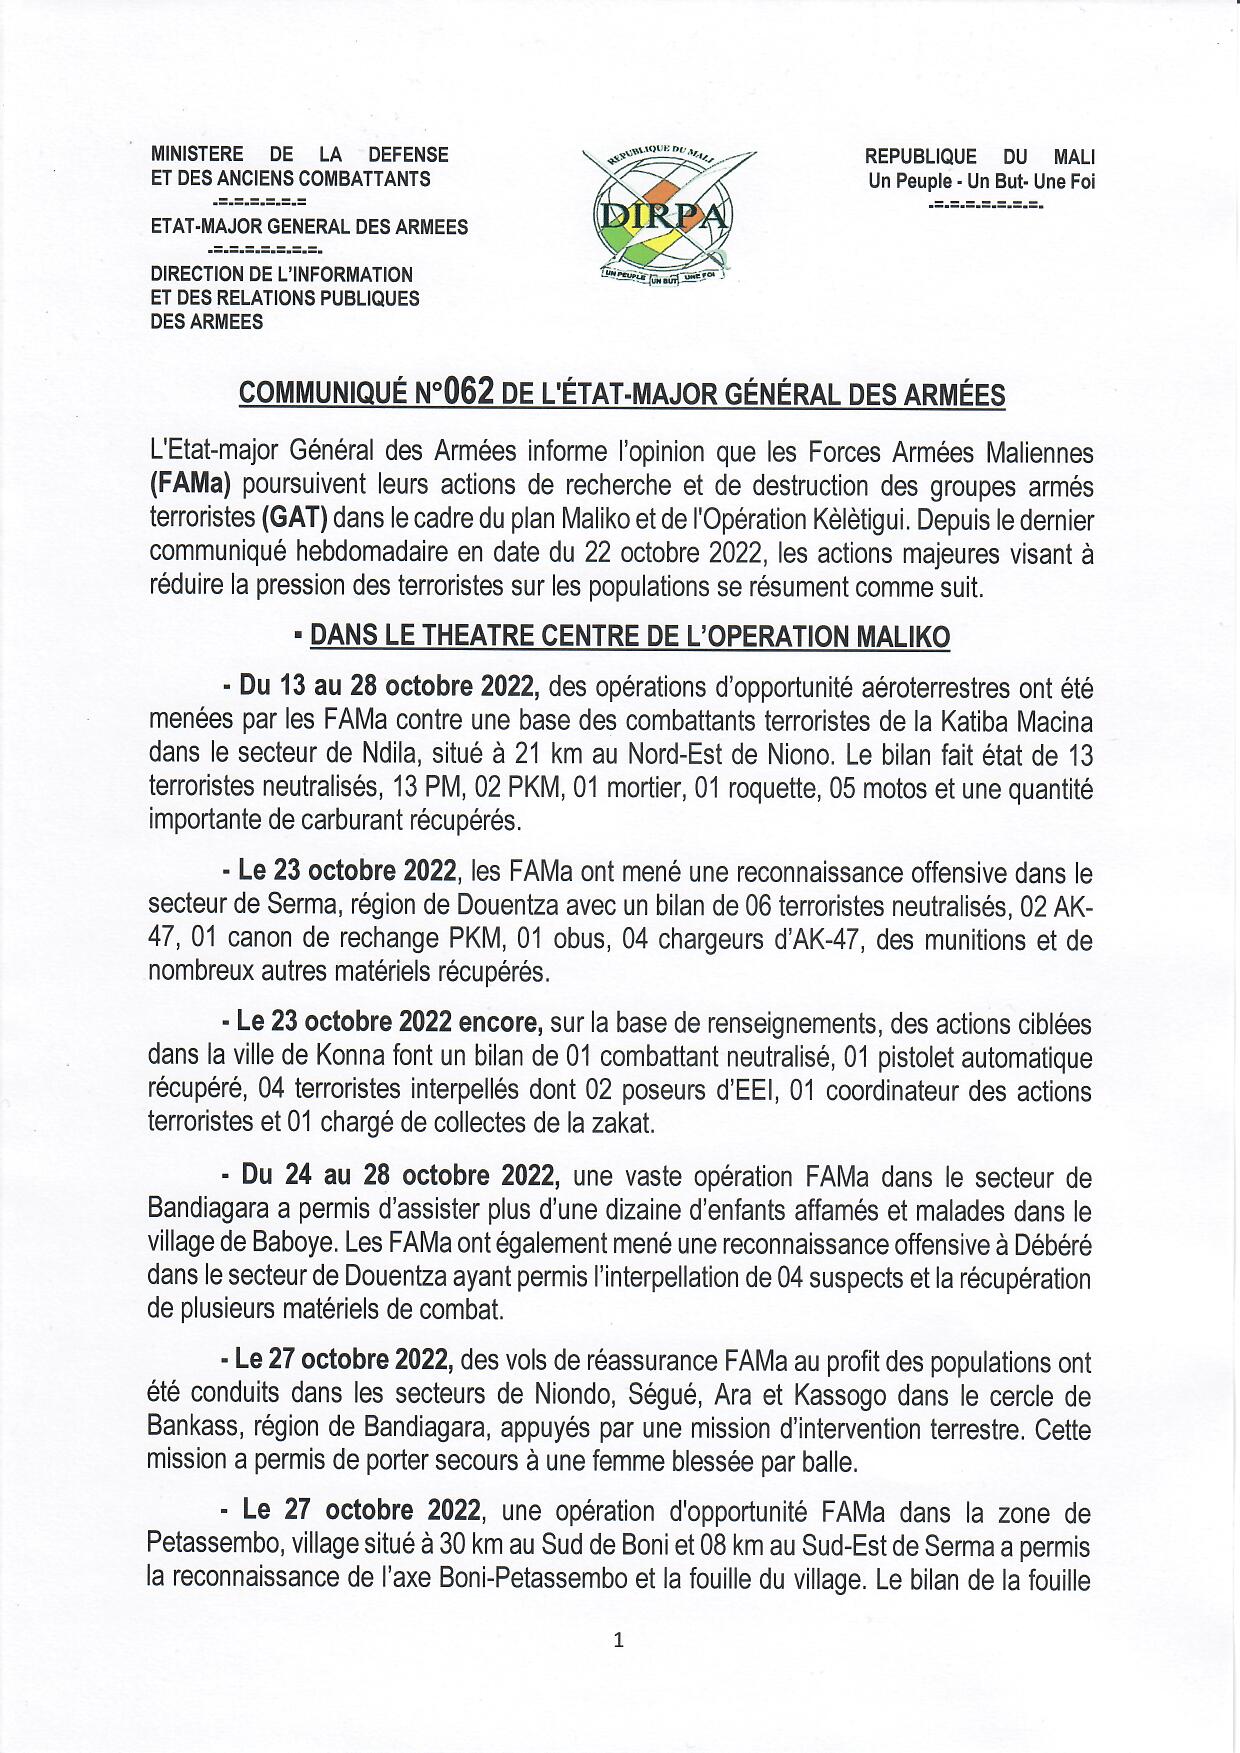  COMMUNIQUÉ N° 062 DU 1er NOVEMBRE 2022 DE L'ÉTAT-MAJOR GÉNÉRAL DES ARMÉES